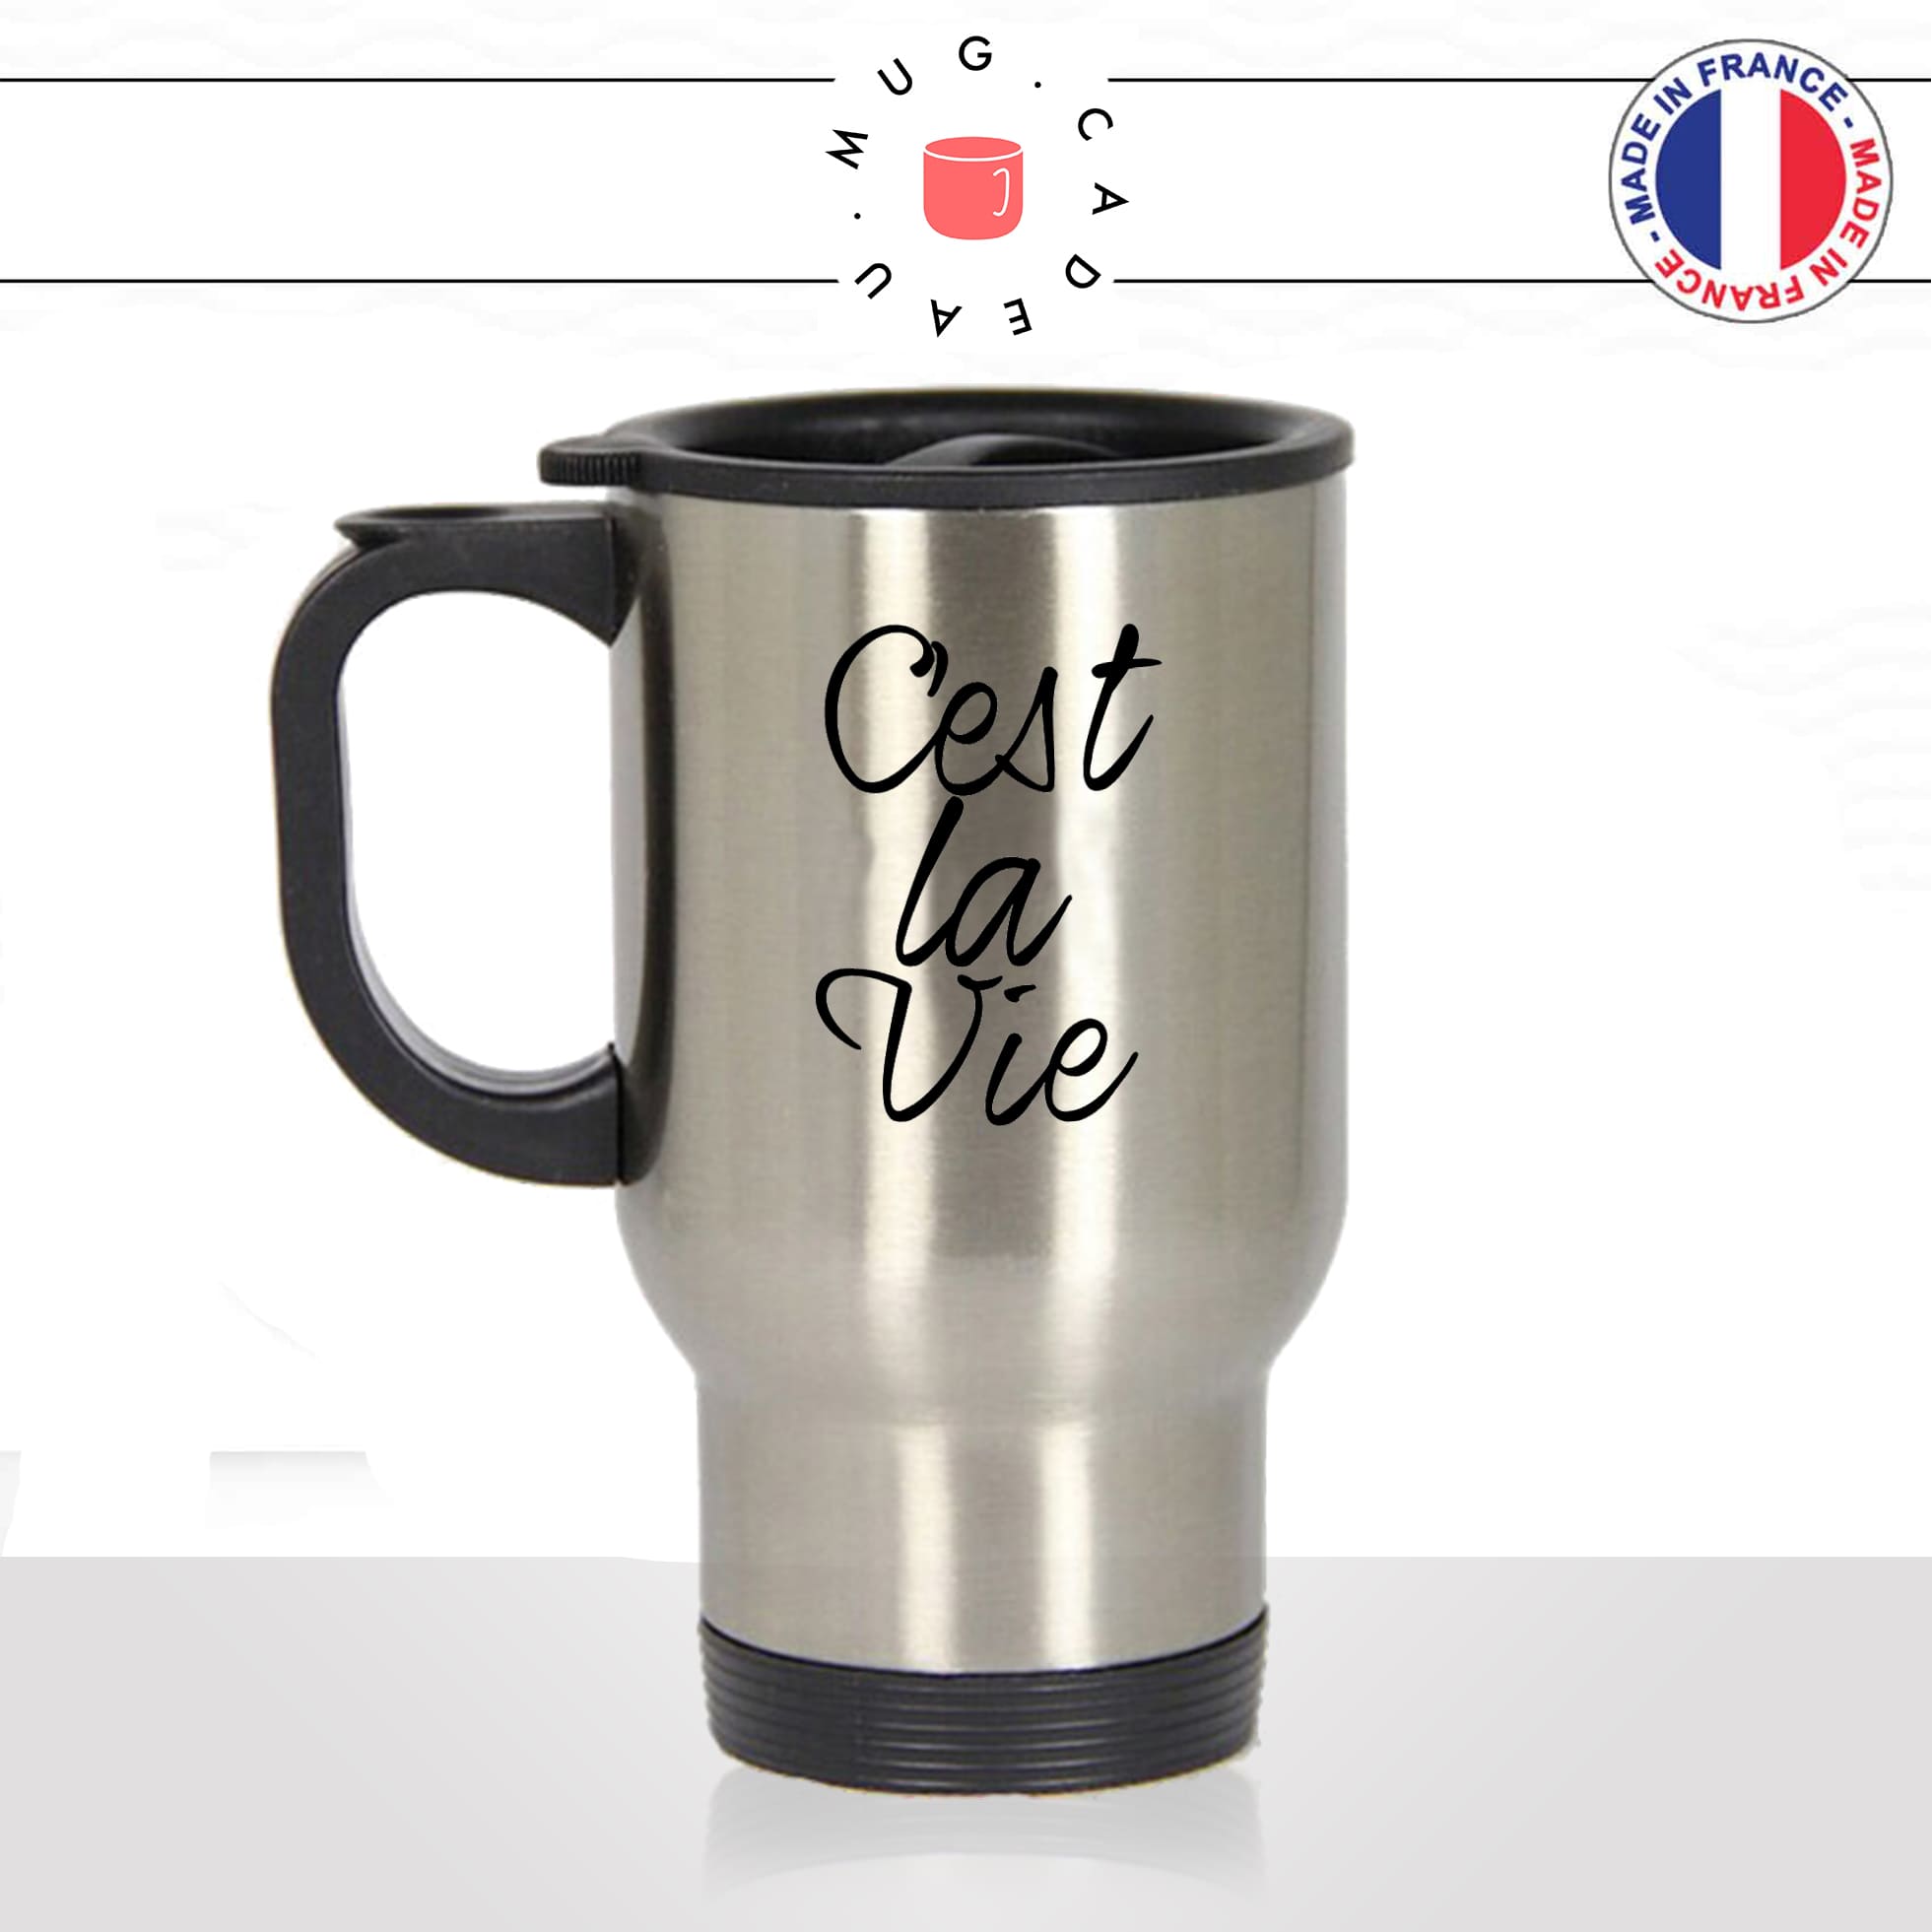 mug-tasse-thermos-isotherme-unique-cest-la-vie-paris-france-francais-homme-femme-humour-fun-cool-idée-cadeau-original-personnalisé